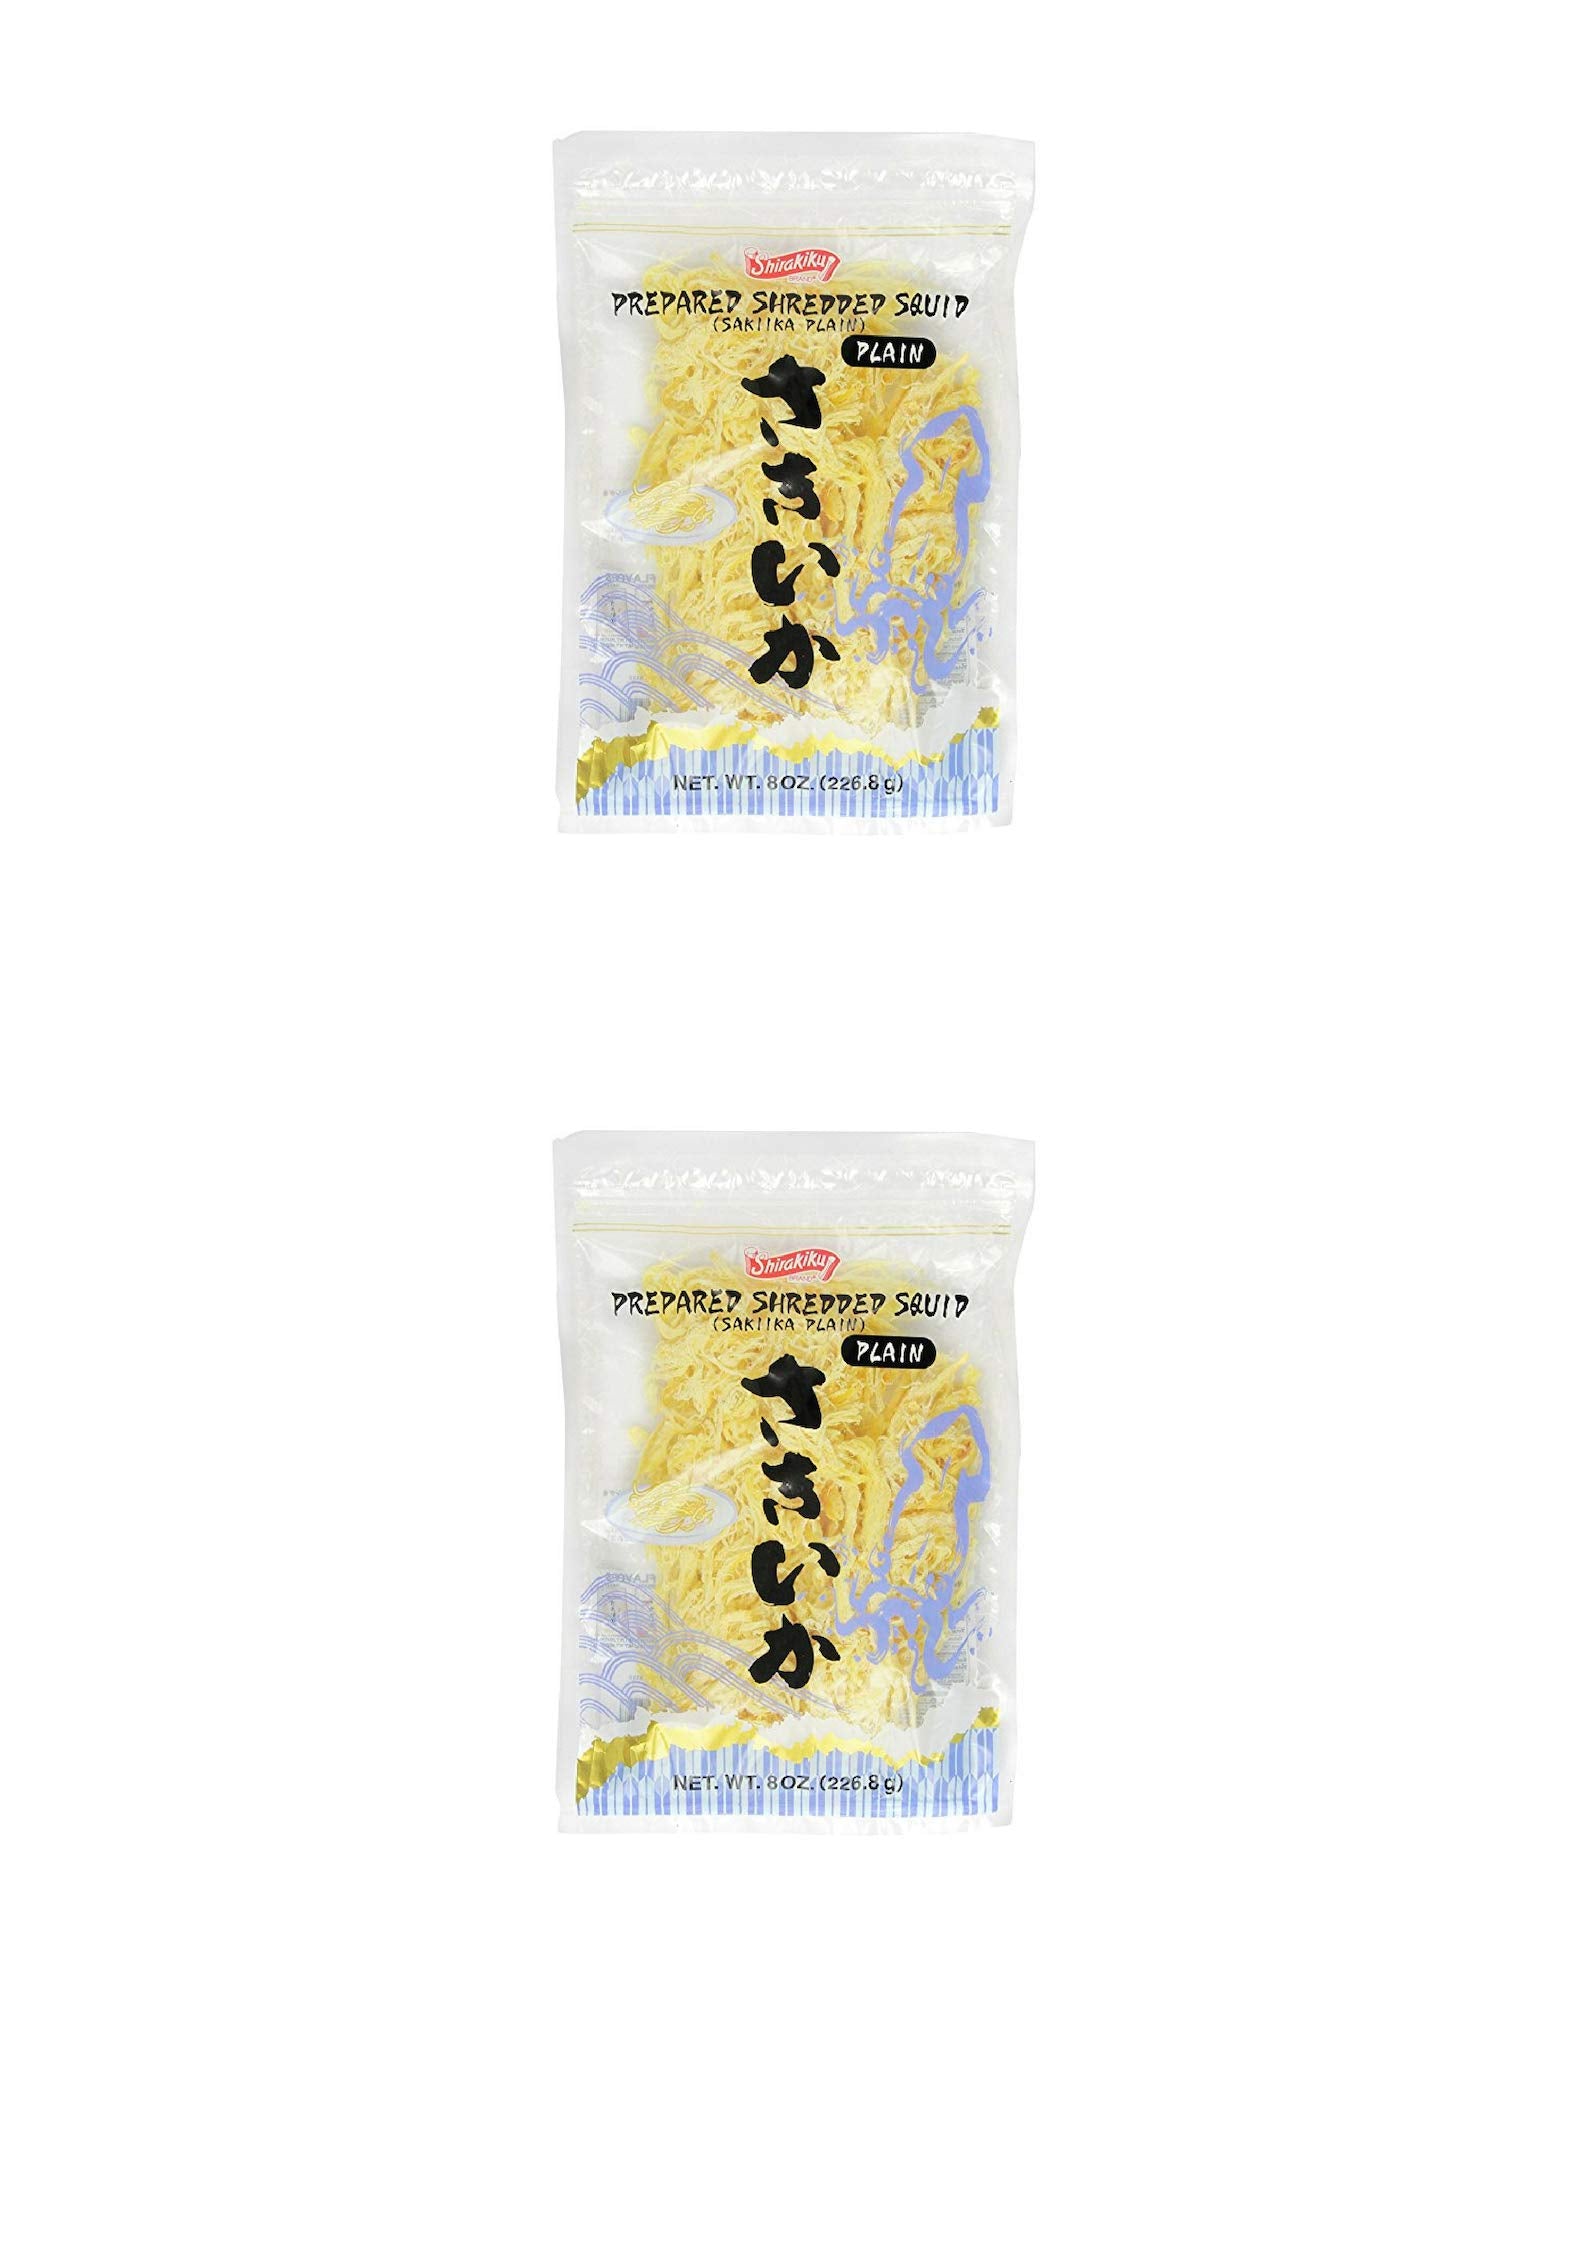 Shirakiku Prepared Shredded Squid Dried Squid Plain Flavor, 8 Ounce (2 PACK)